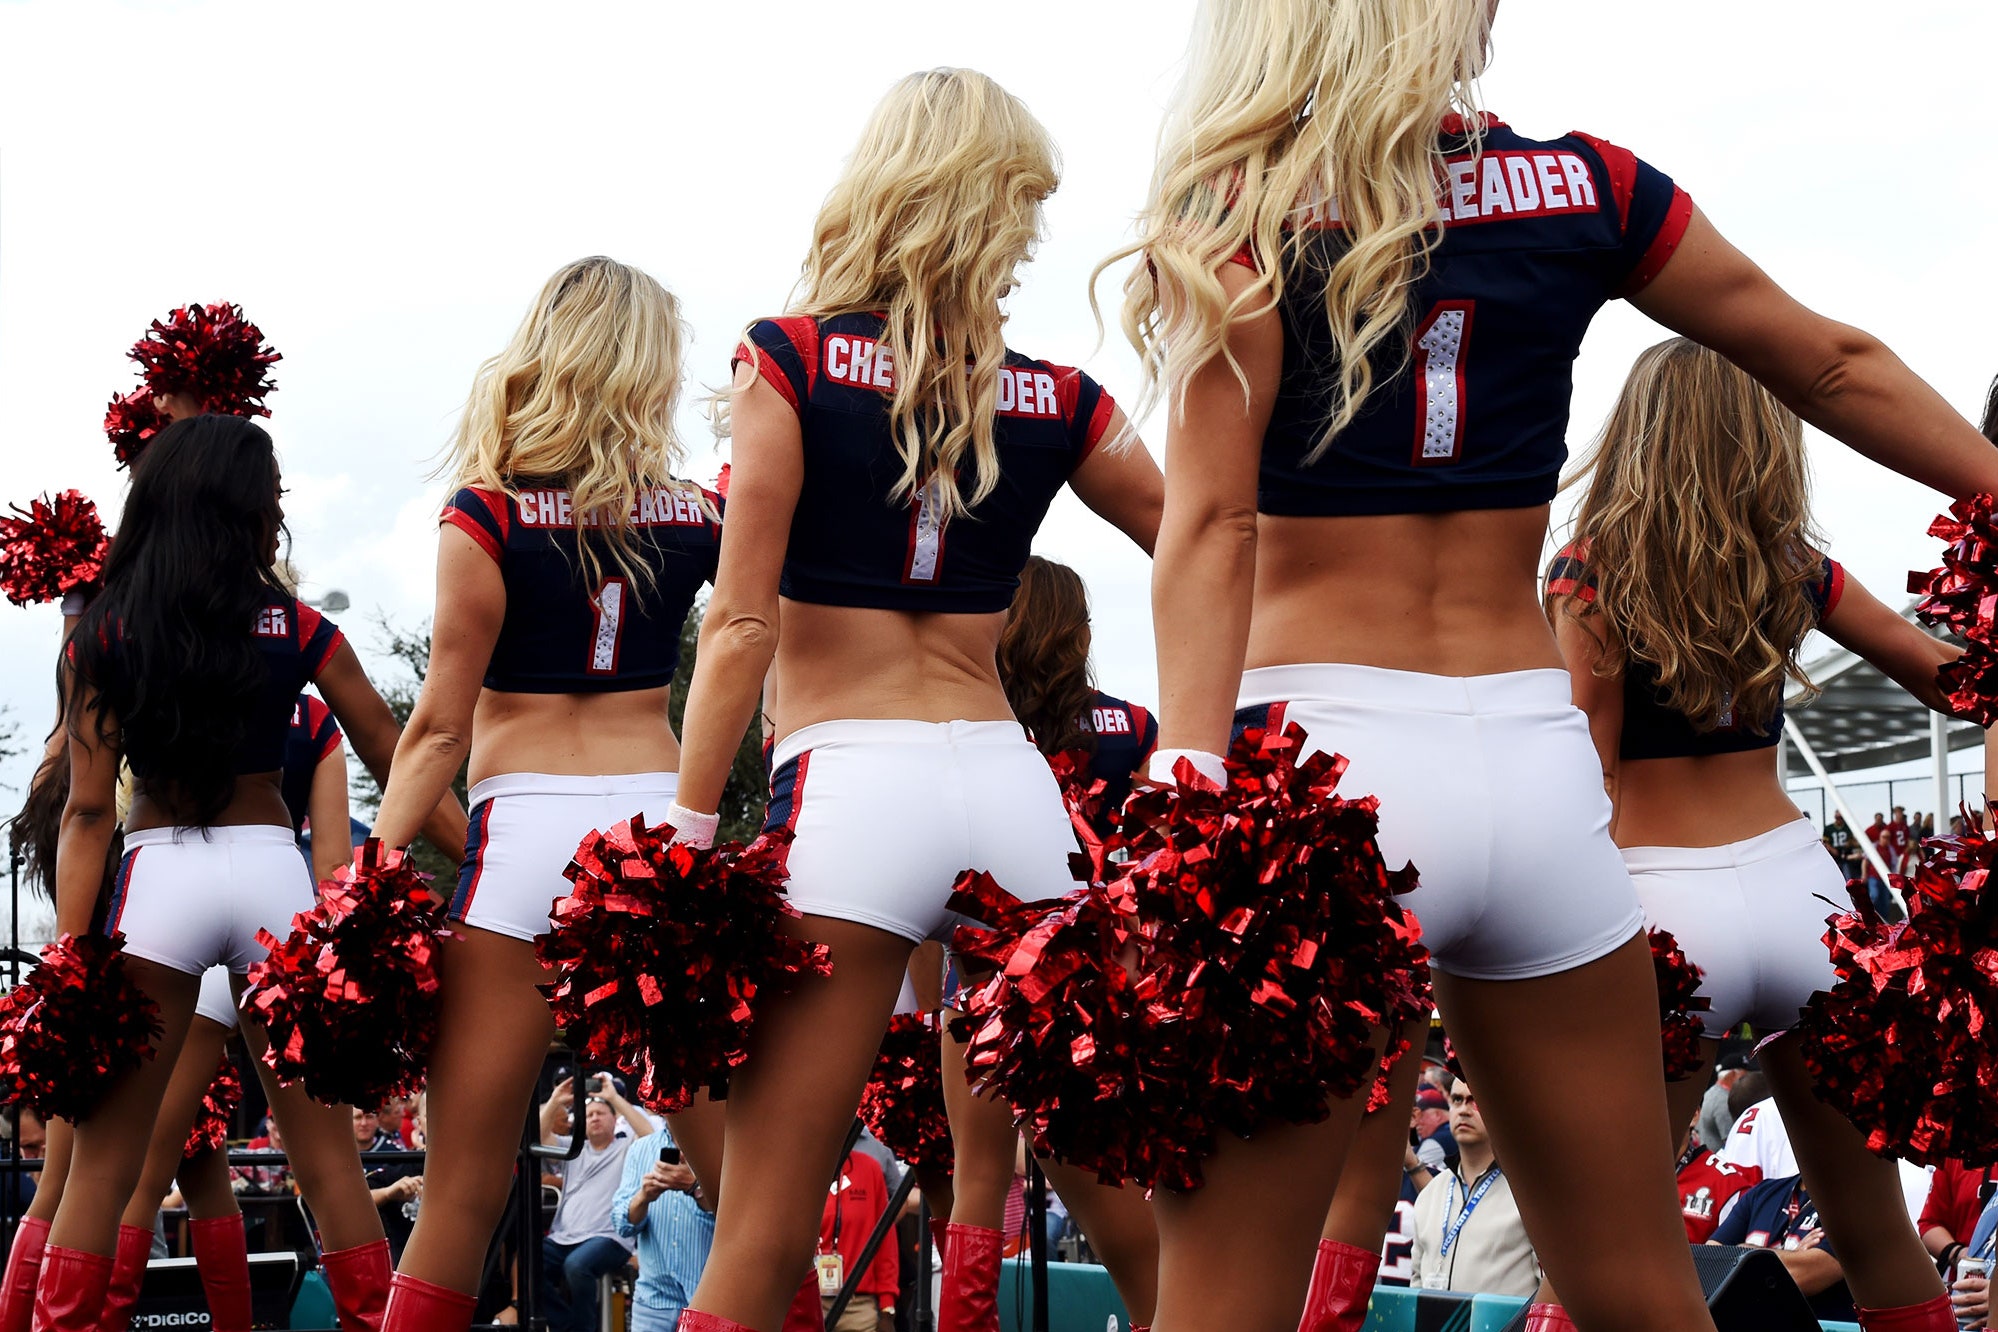 Hot cheerleaders butts - 🧡 Hot cheerleaders butts 30 Hilariously Embarrass...